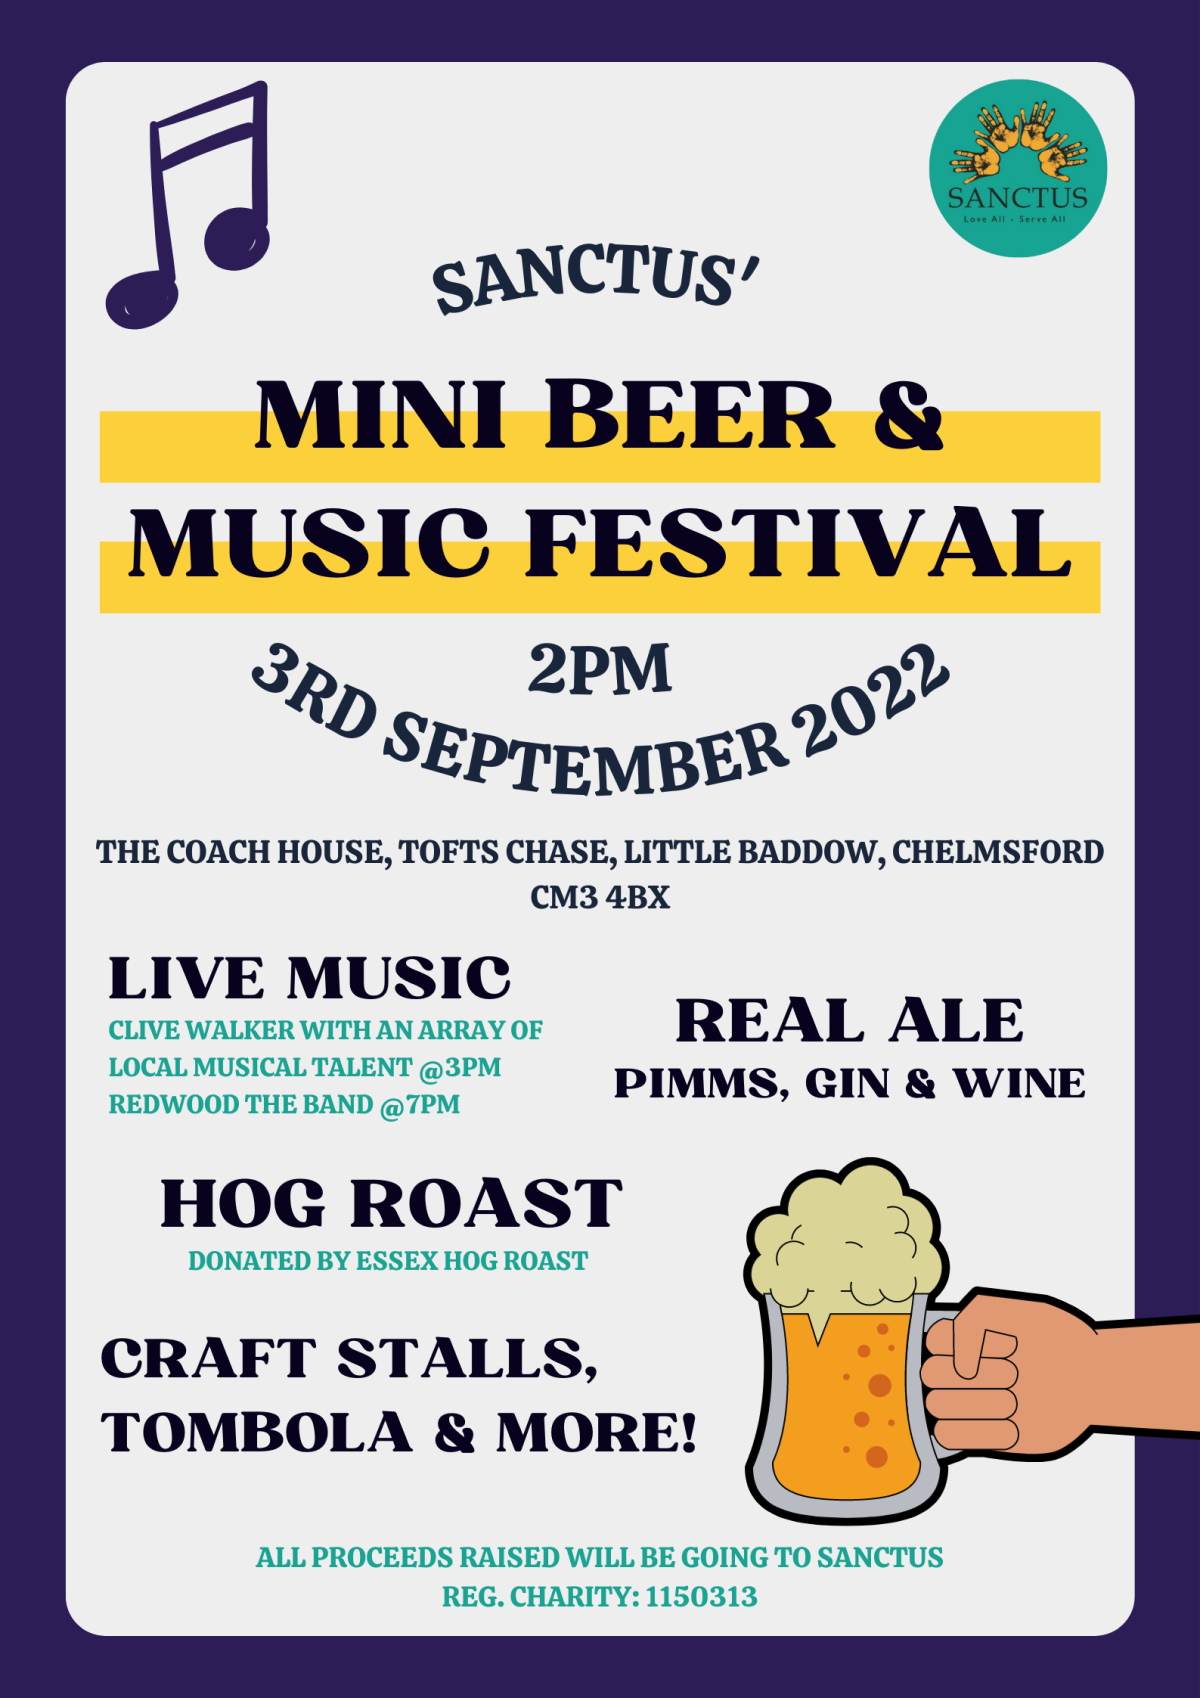 Mini beer & music festival sanctus 2022